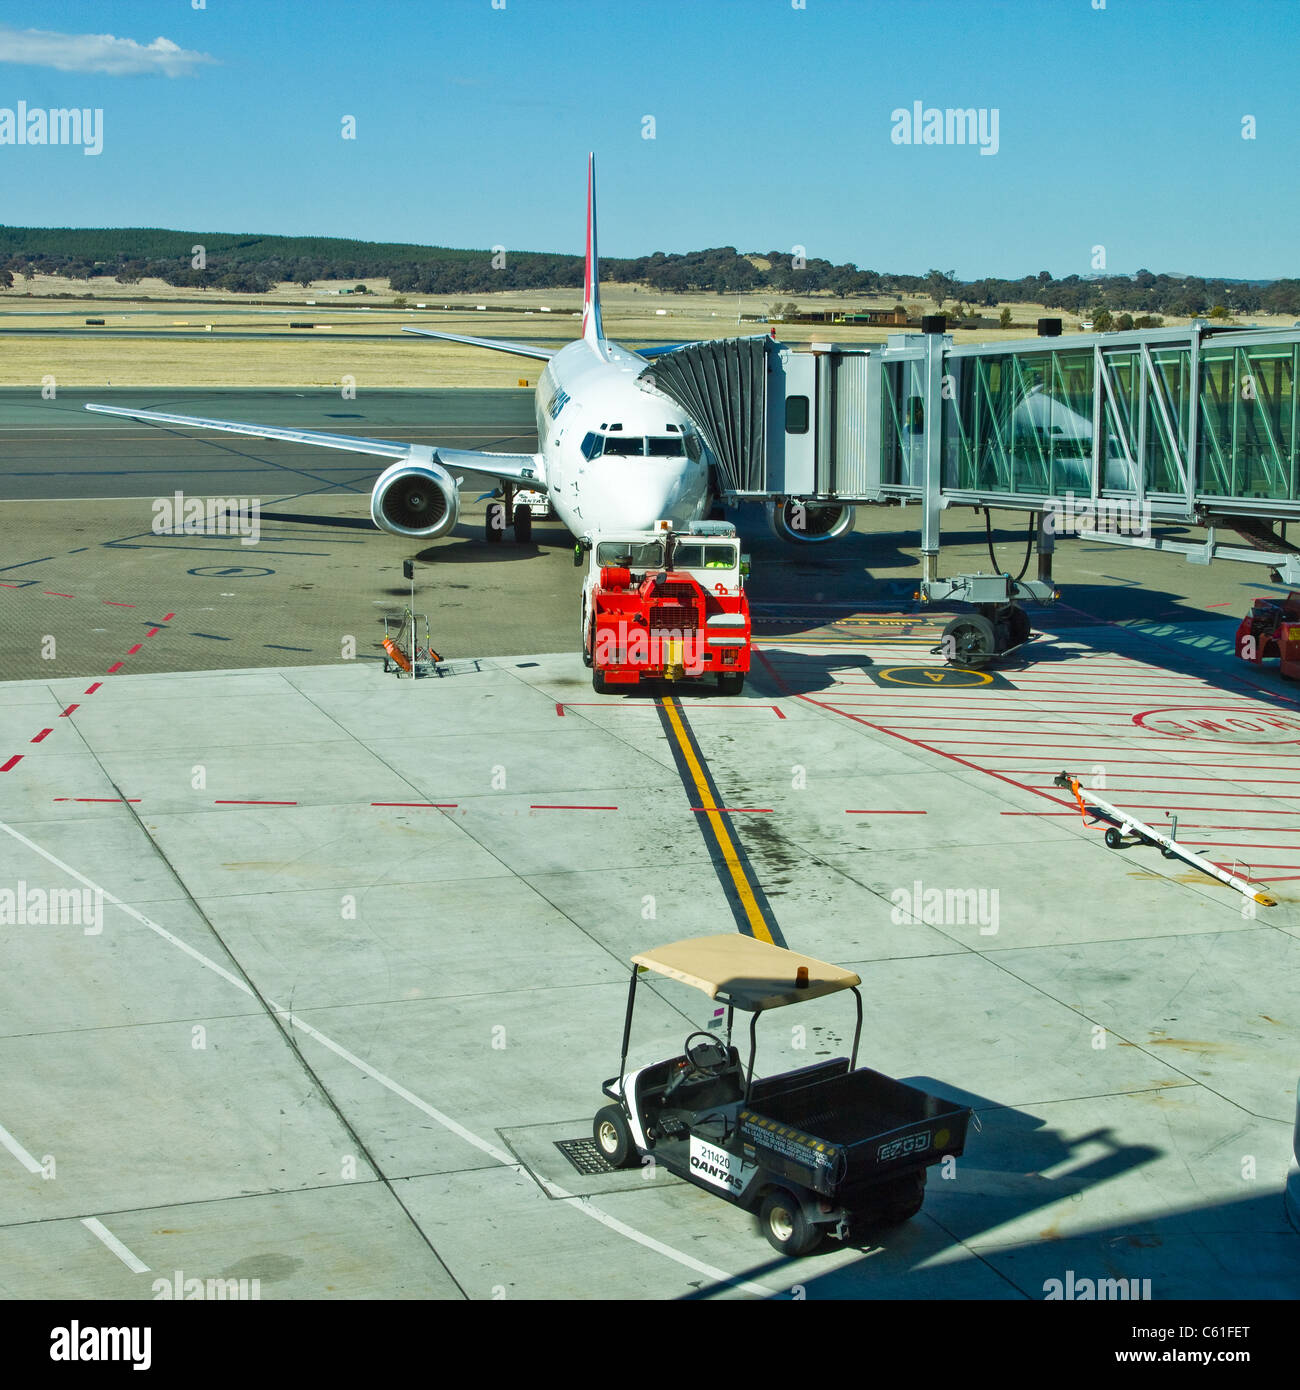 Qantas aircraft at terminal Stock Photo